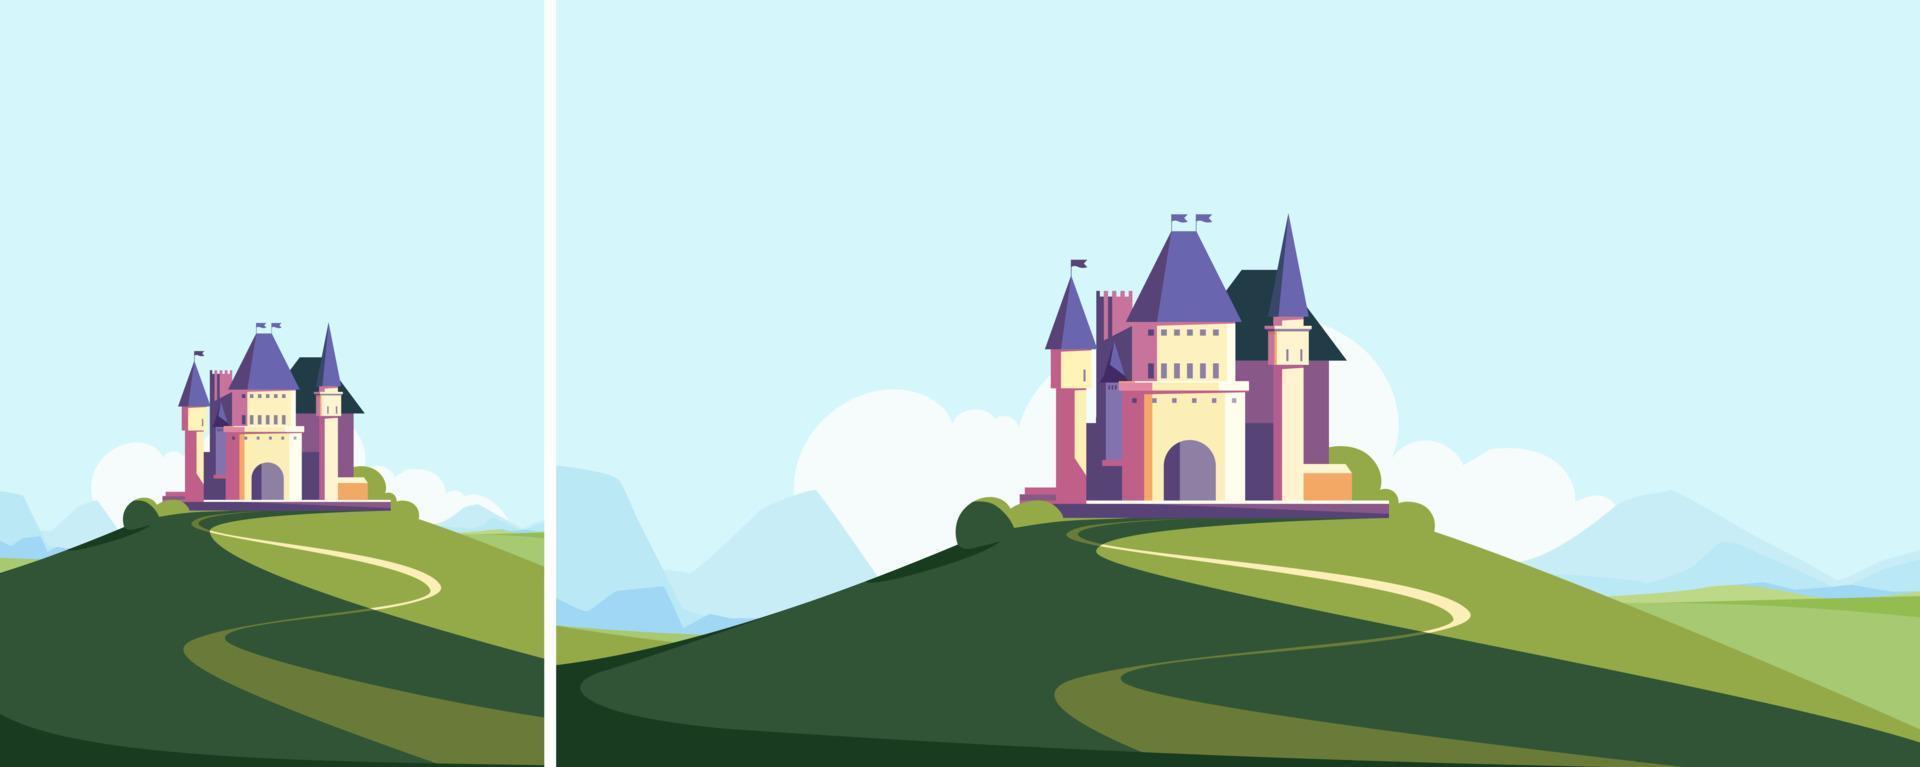 castillo en el colina en verano estación. paisaje con medieval edificio en diferente formatos. vector